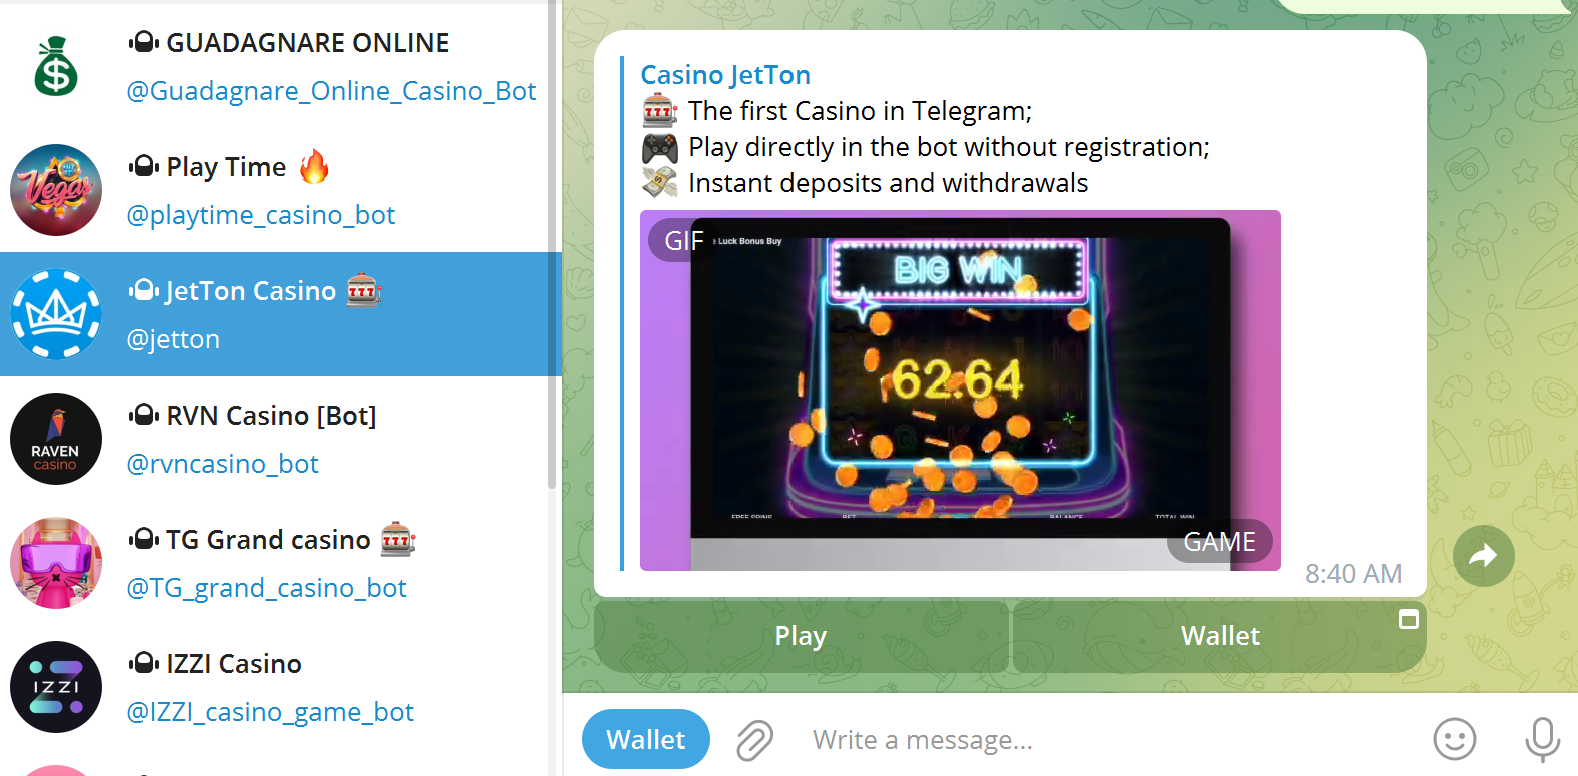 Jetton Casino Telegram Casino